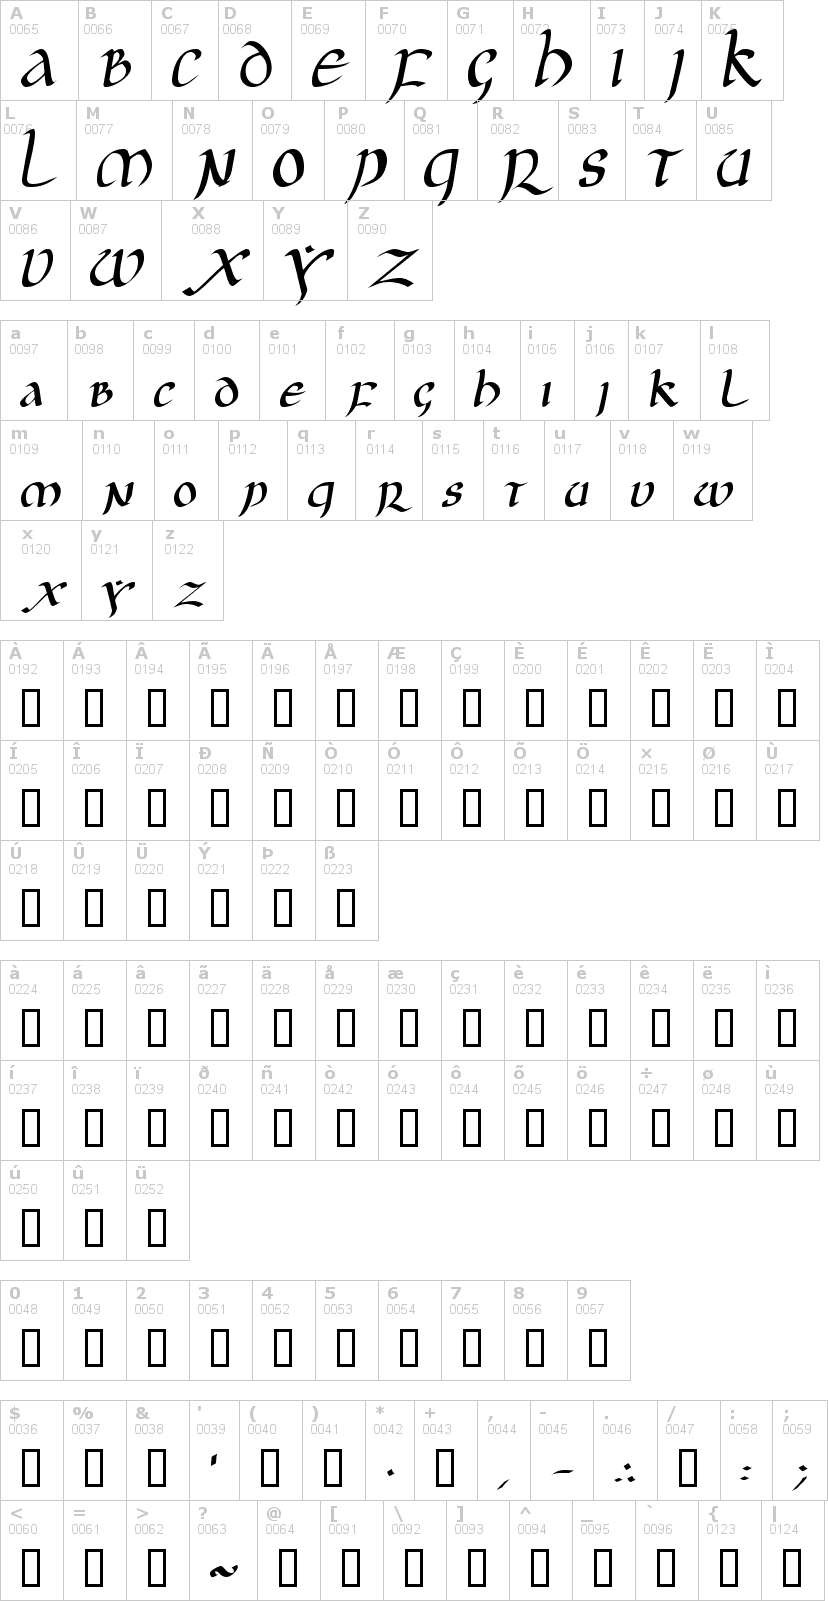 Lettere dell'alfabeto del font jgj-uncial con le quali è possibile realizzare adesivi prespaziati